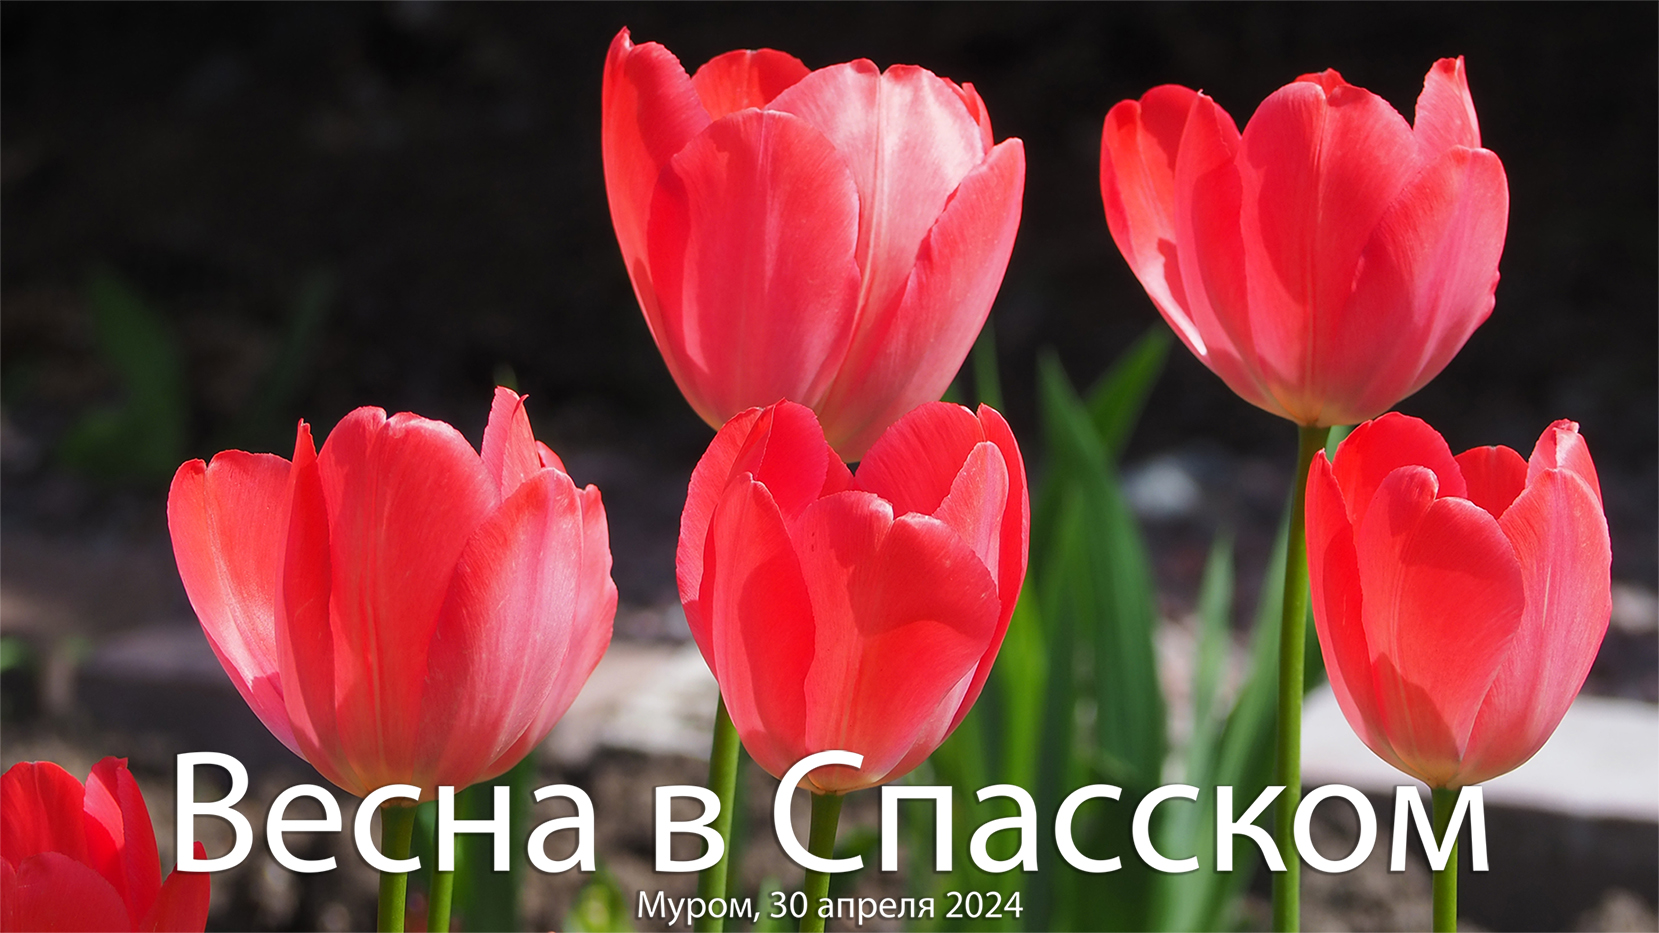 Весна в Спасском, Муром, 30 апреля 2024 (Тюльпаны), Spring in Spassky, Murom, April 30, 2024, Tulips